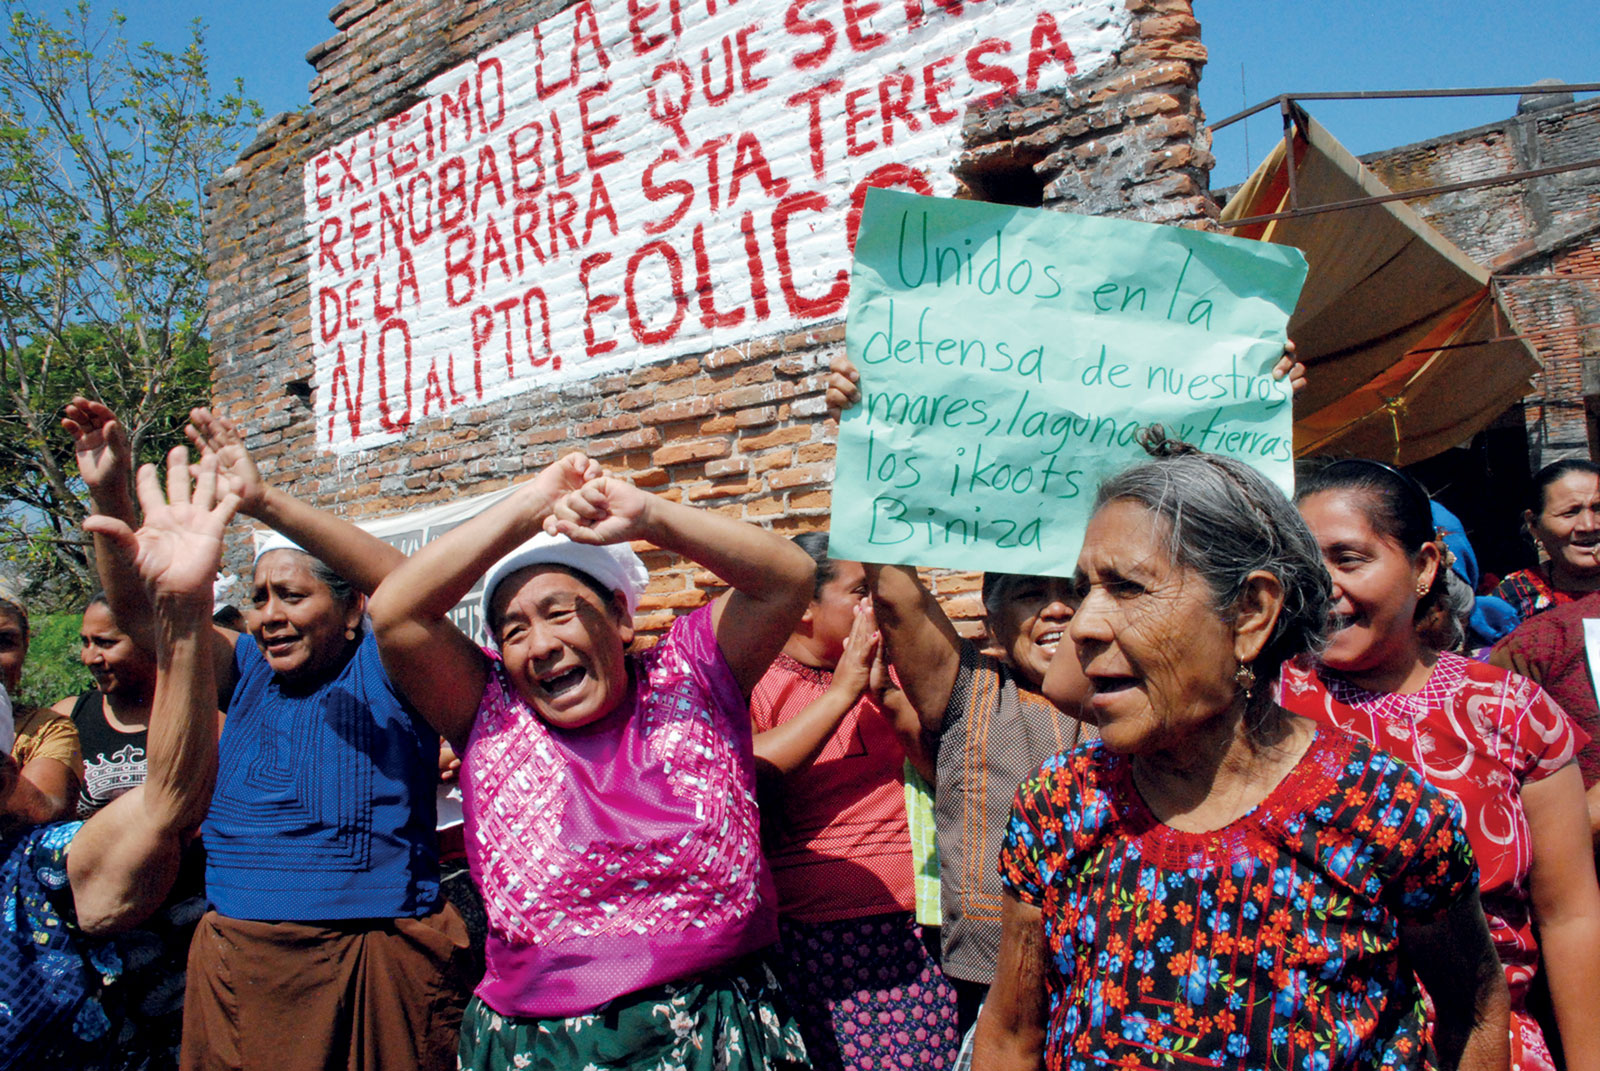 Resistencia del Istmo de Tehuantepec contra el corredor eólico. Fotografía de ©Santiago Navarro. Cortesía del artista y Avispa Midia